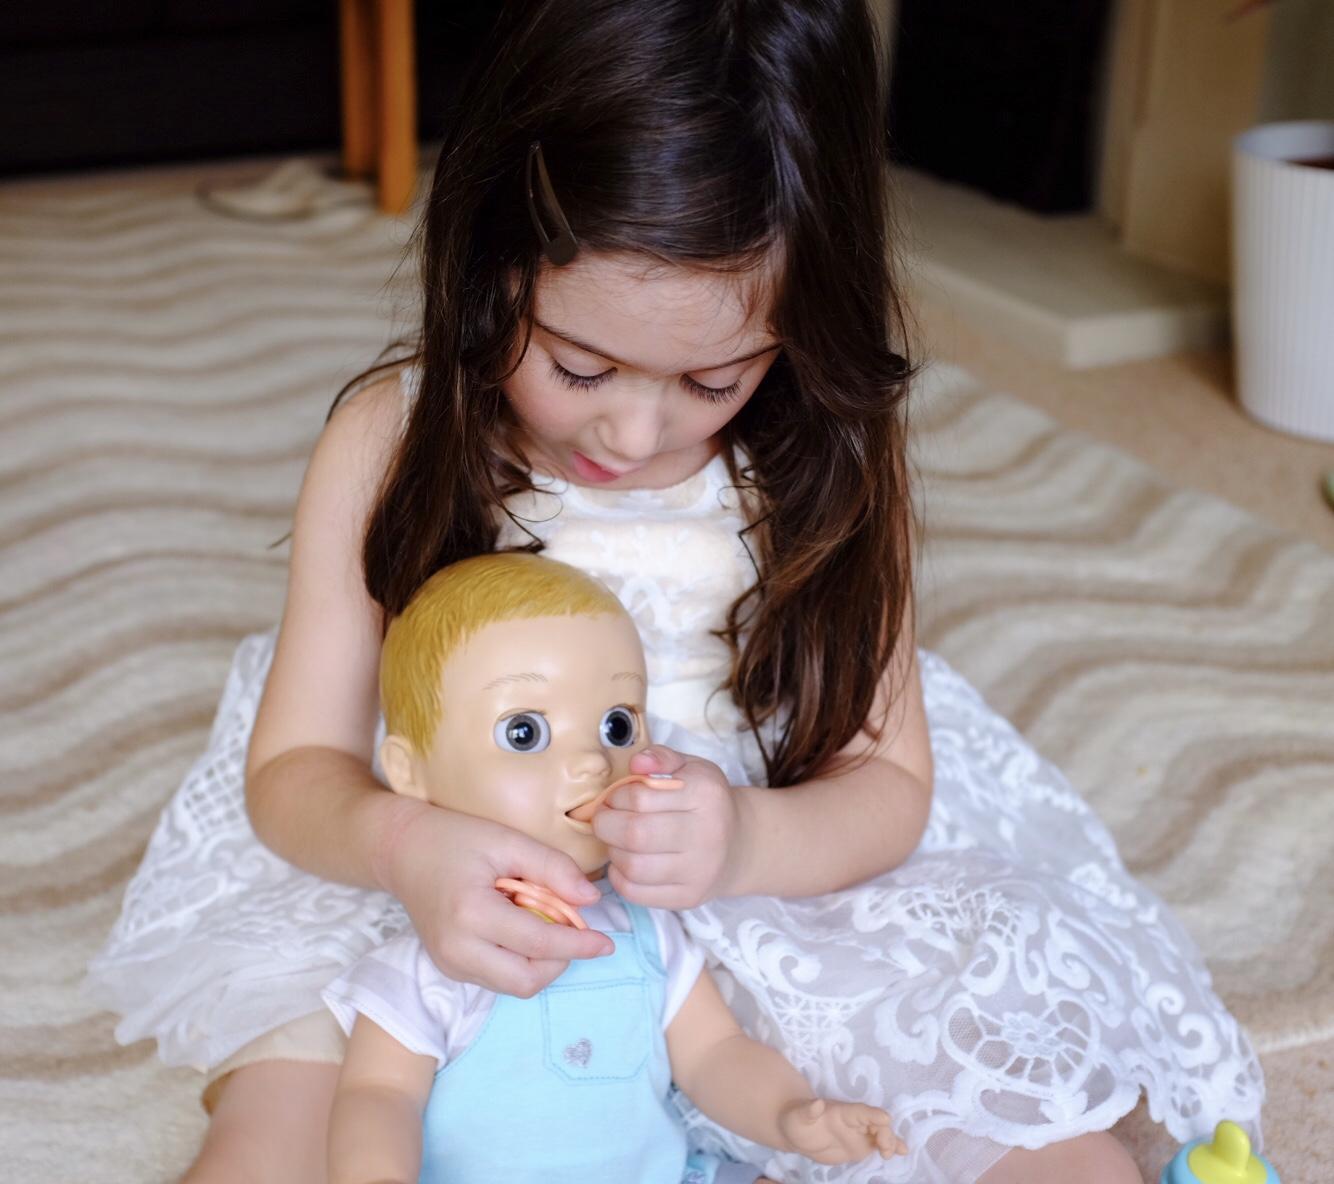 Girl feeding Luvabeau doll